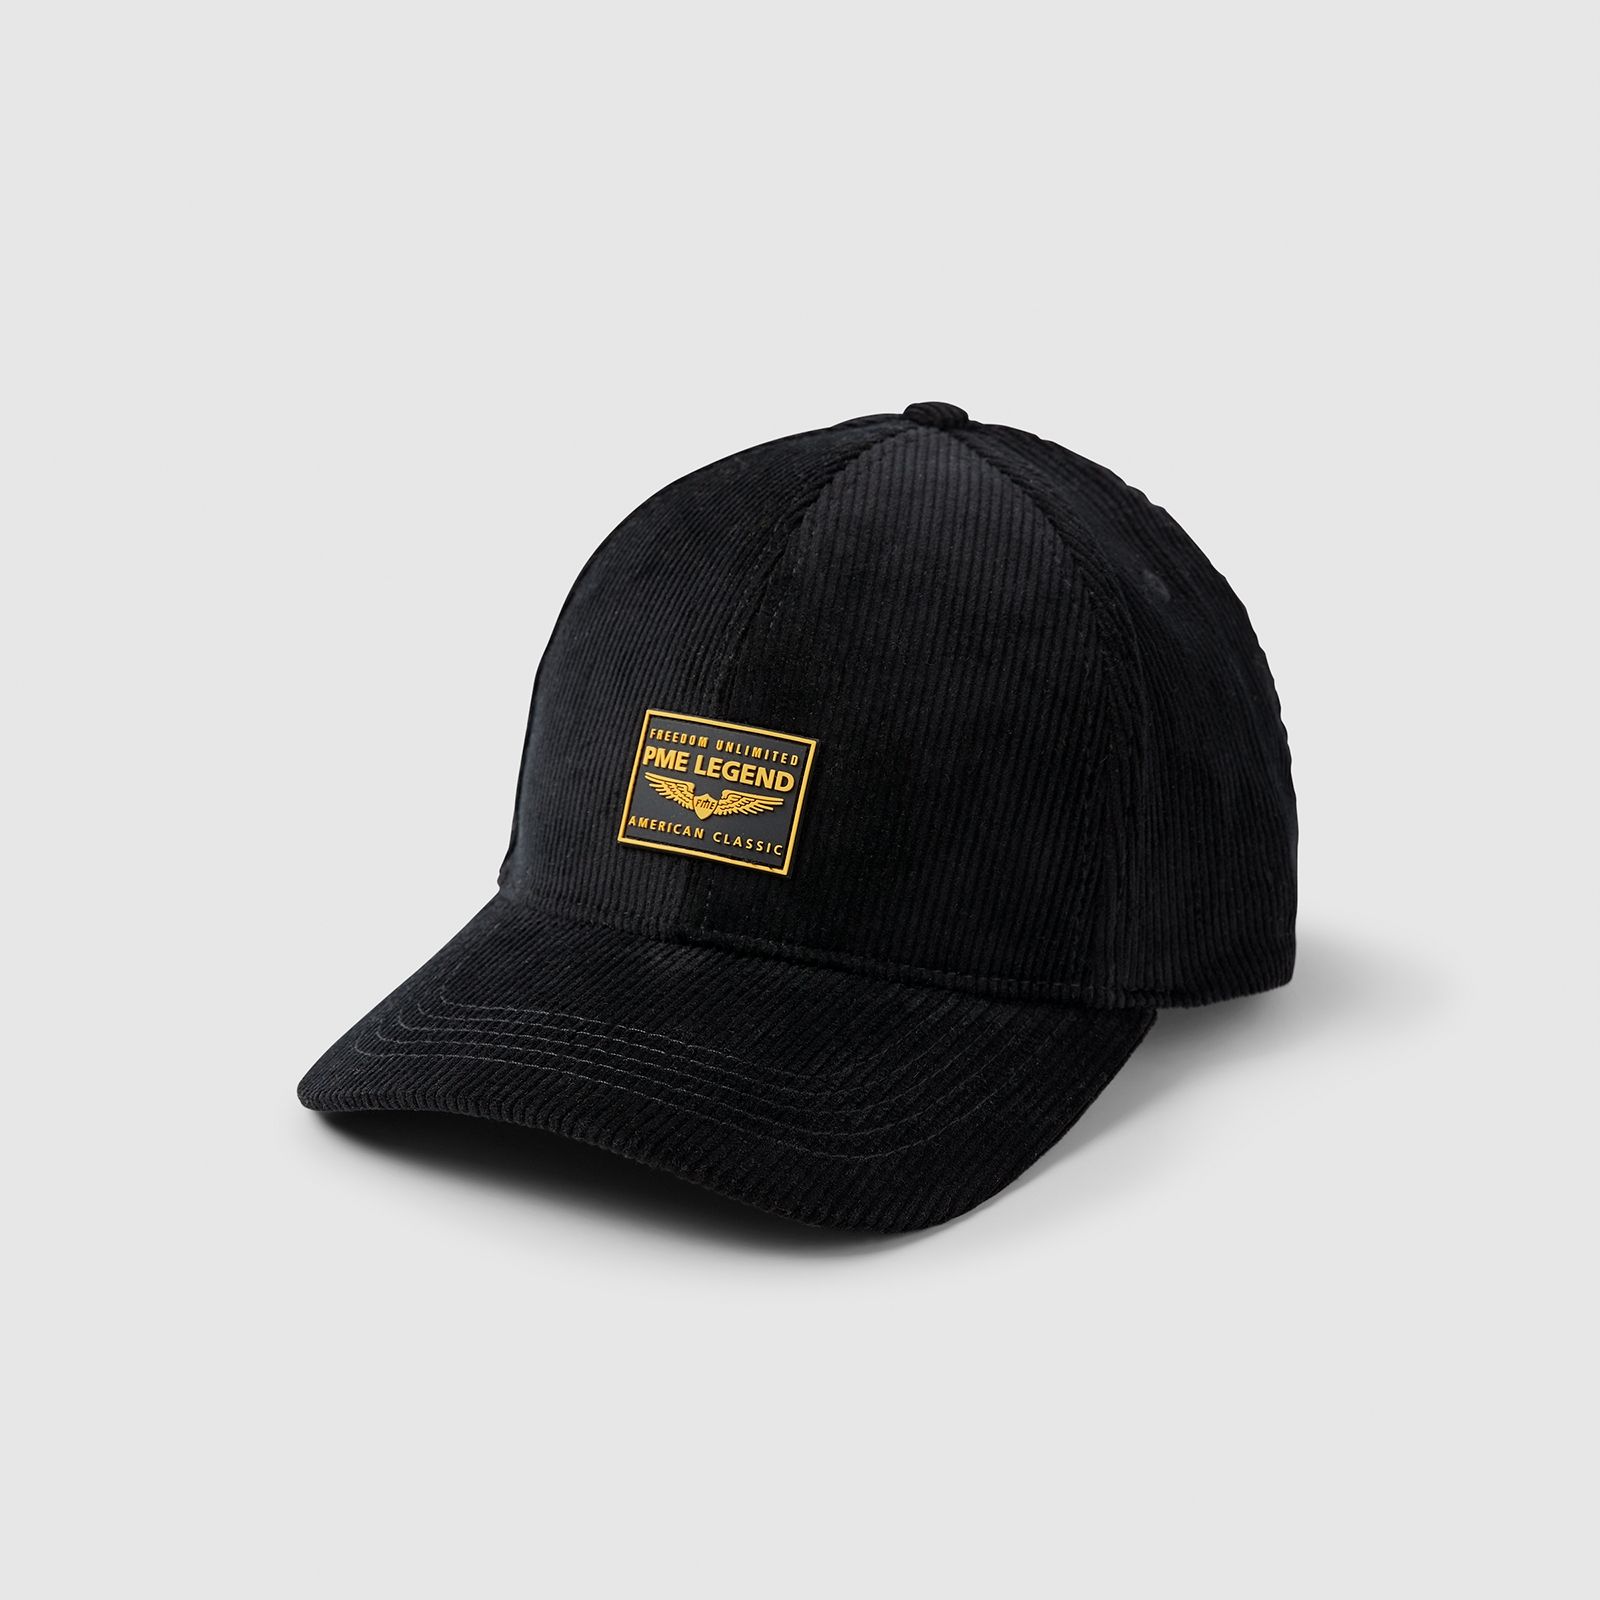 Pme Legend Corduroy cap with rubber badge - Black Black 00097553-999